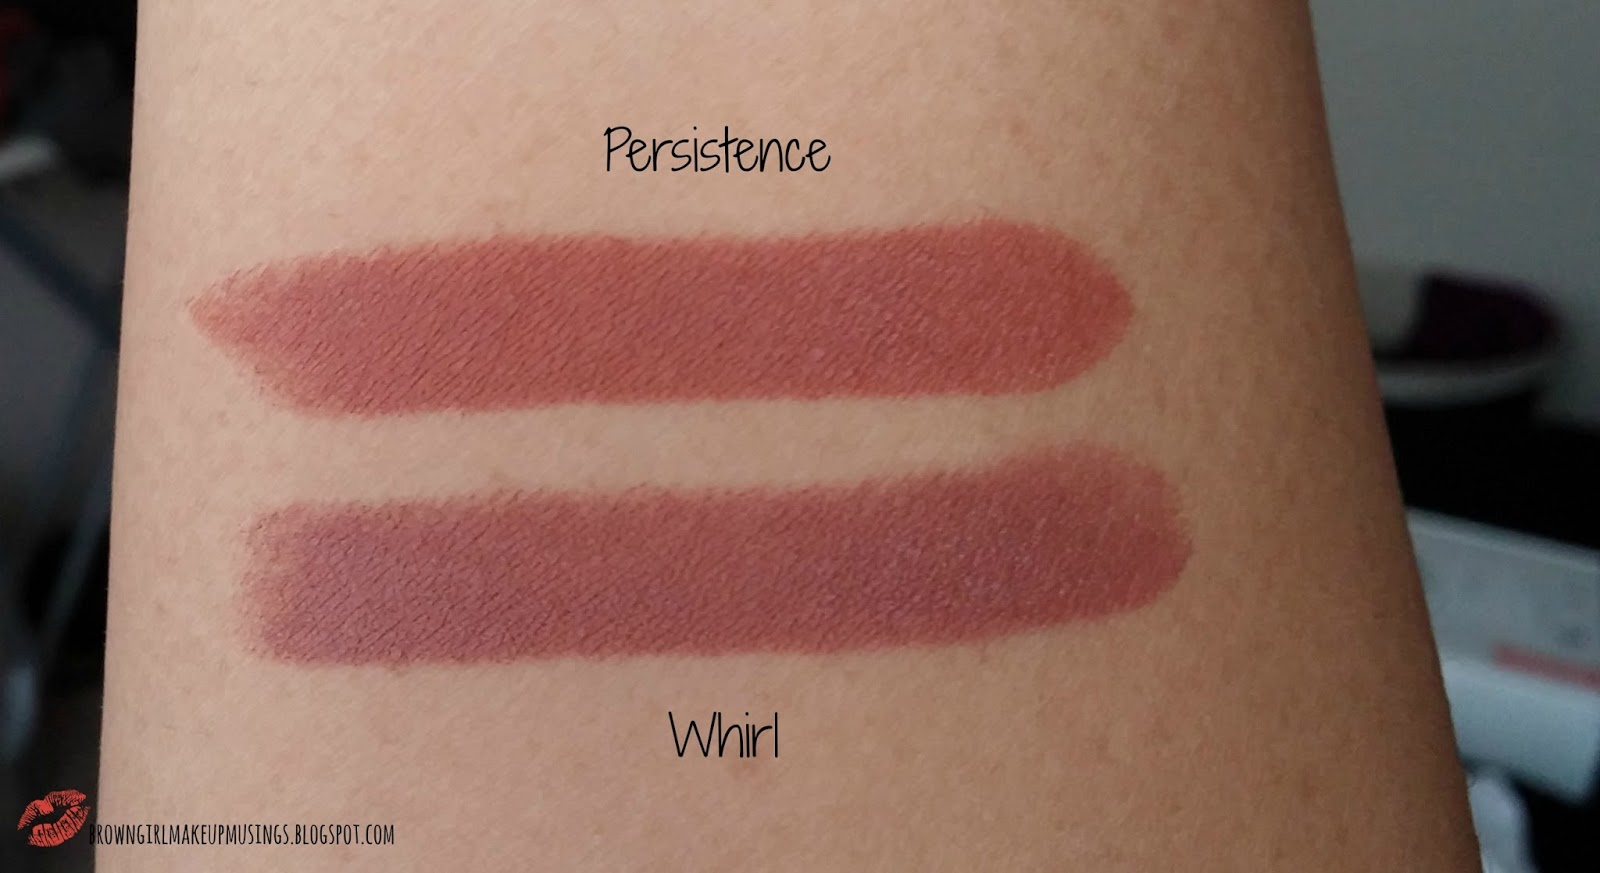 à¸à¸¥à¸à¸²à¸£à¸à¹à¸à¸«à¸²à¸£à¸¹à¸à¸à¸²à¸à¸ªà¸³à¸«à¸£à¸±à¸ mac matte lipstick persistence